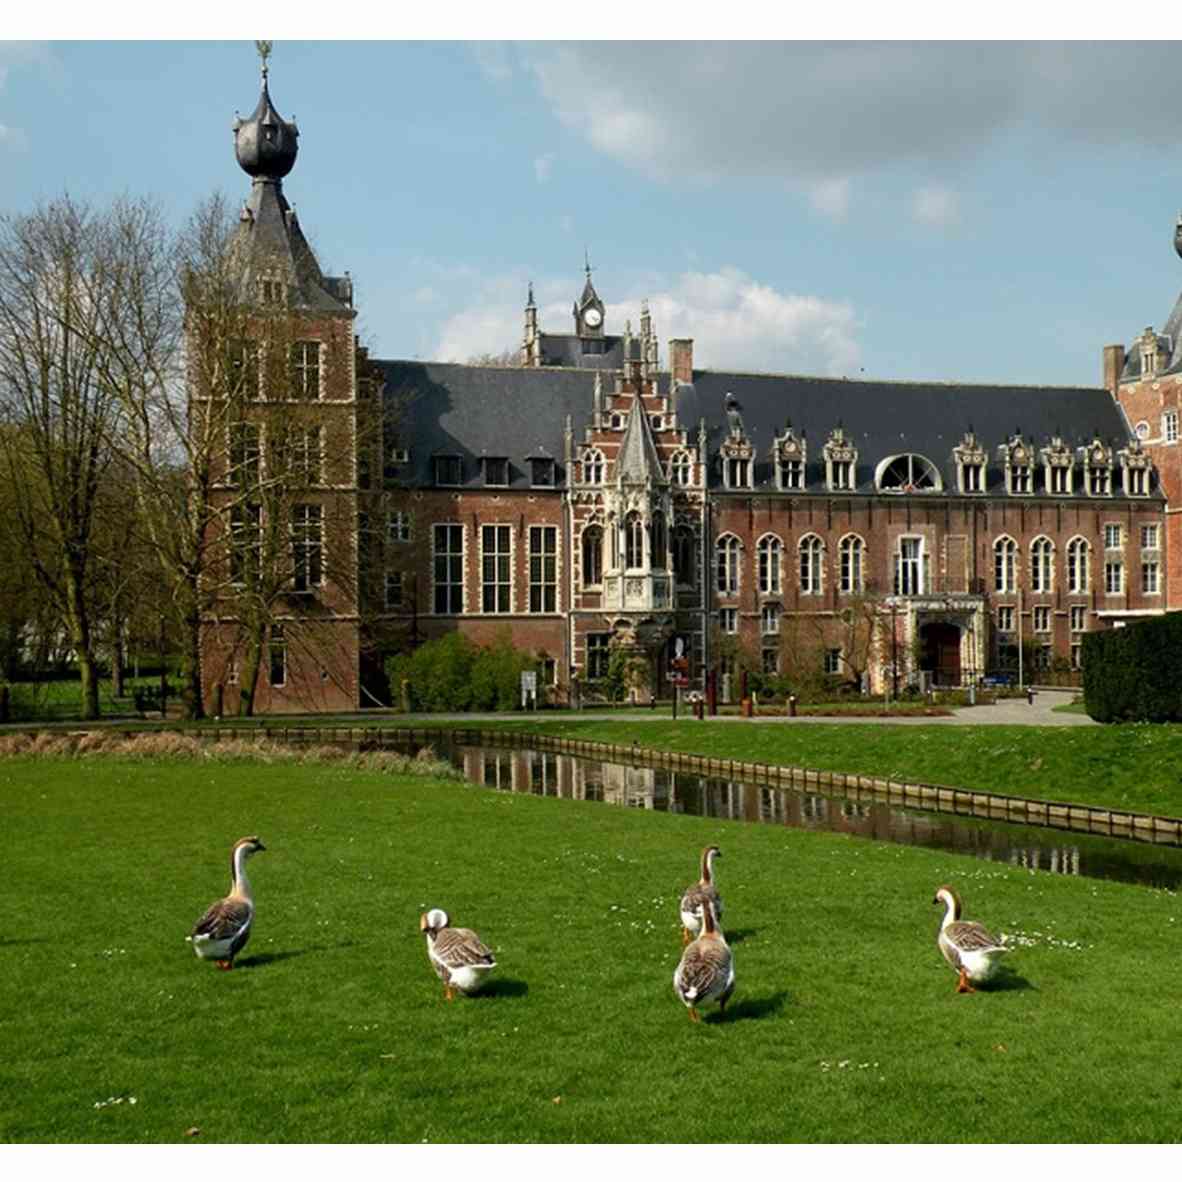 4 Spot Traveling di Leuven, Mengintip Sejarah Dan Keindahan Kota Di Belgia